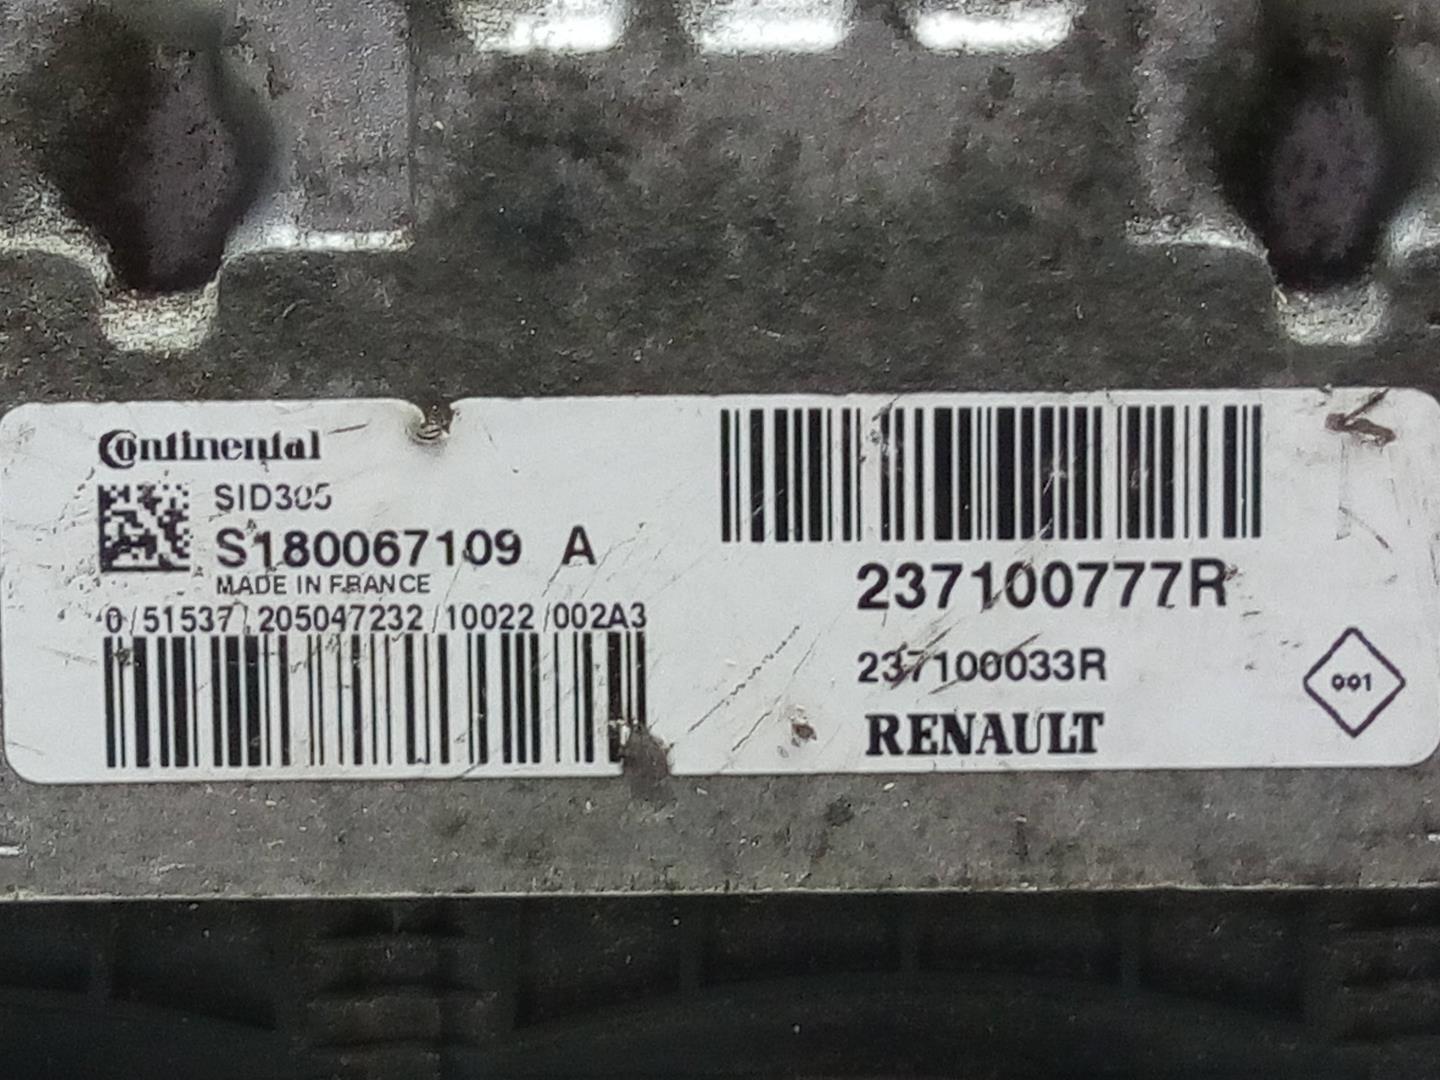 RENAULT Scenic 3 generation (2009-2015) Блок управления двигателем 237100777R, 237100033R 18586642